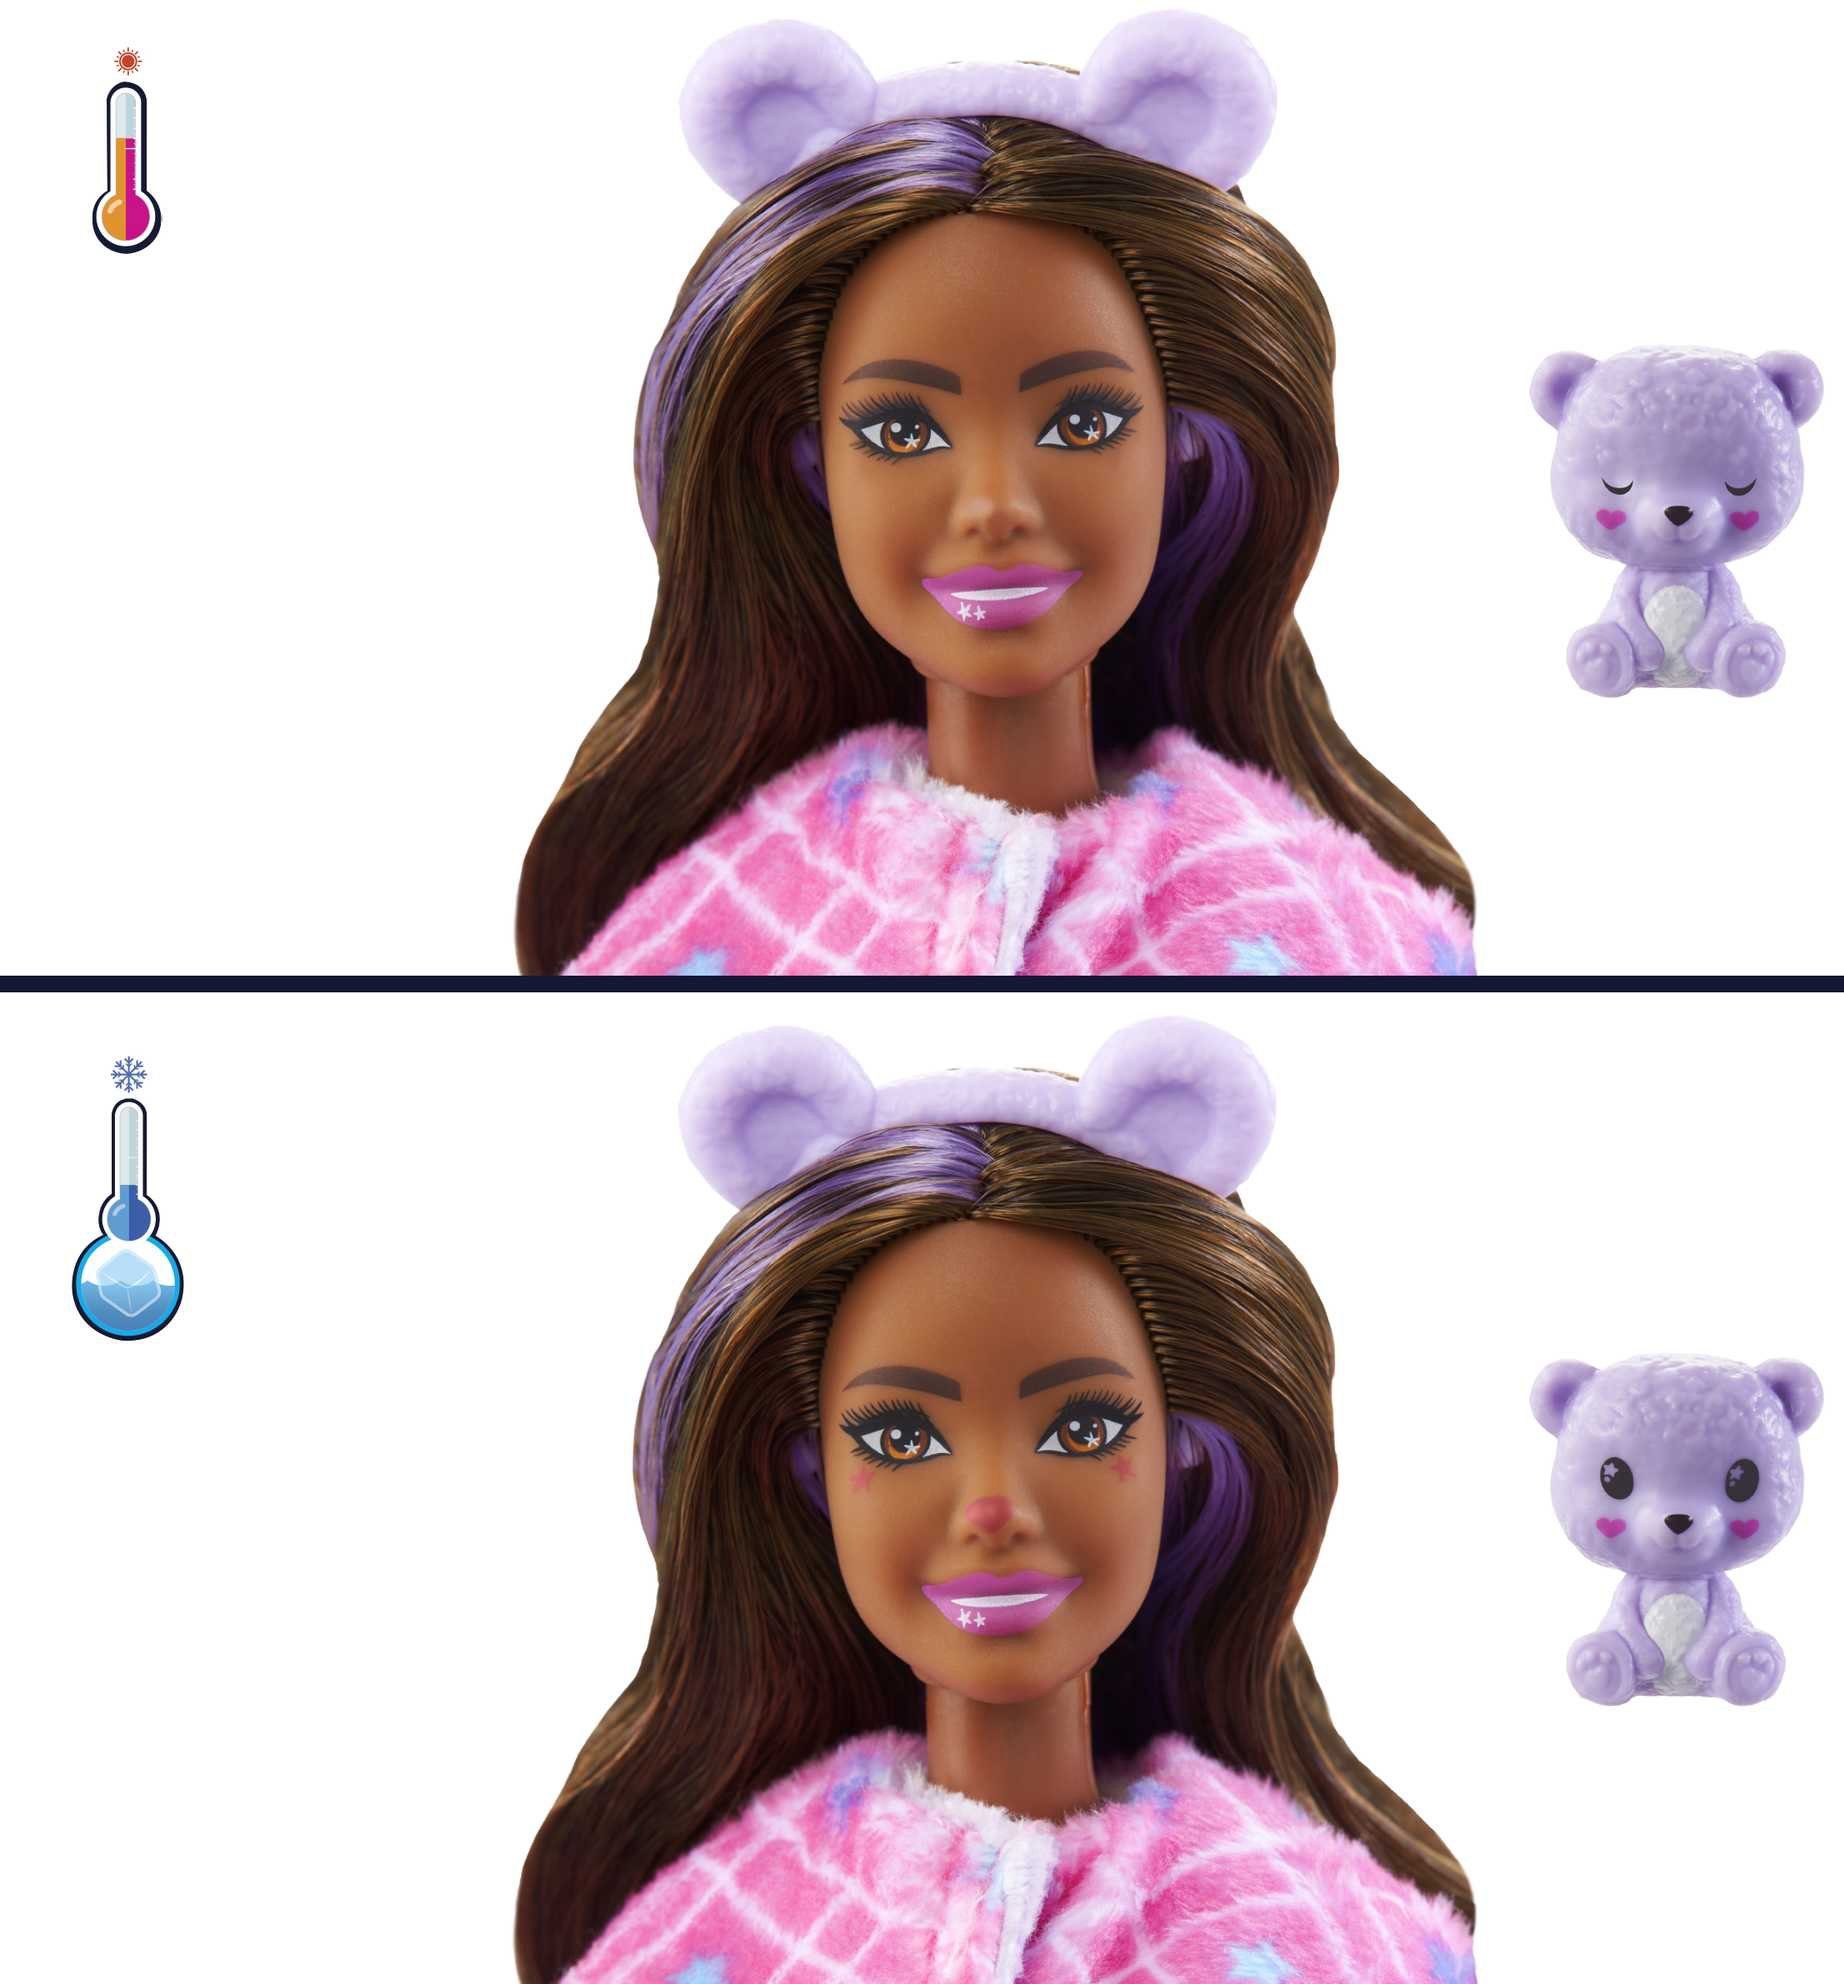 Teddy-Plüschkostüm mit Überraschungen Barbie Cutie 10 Anziehpuppe und Mattel® Reveal,